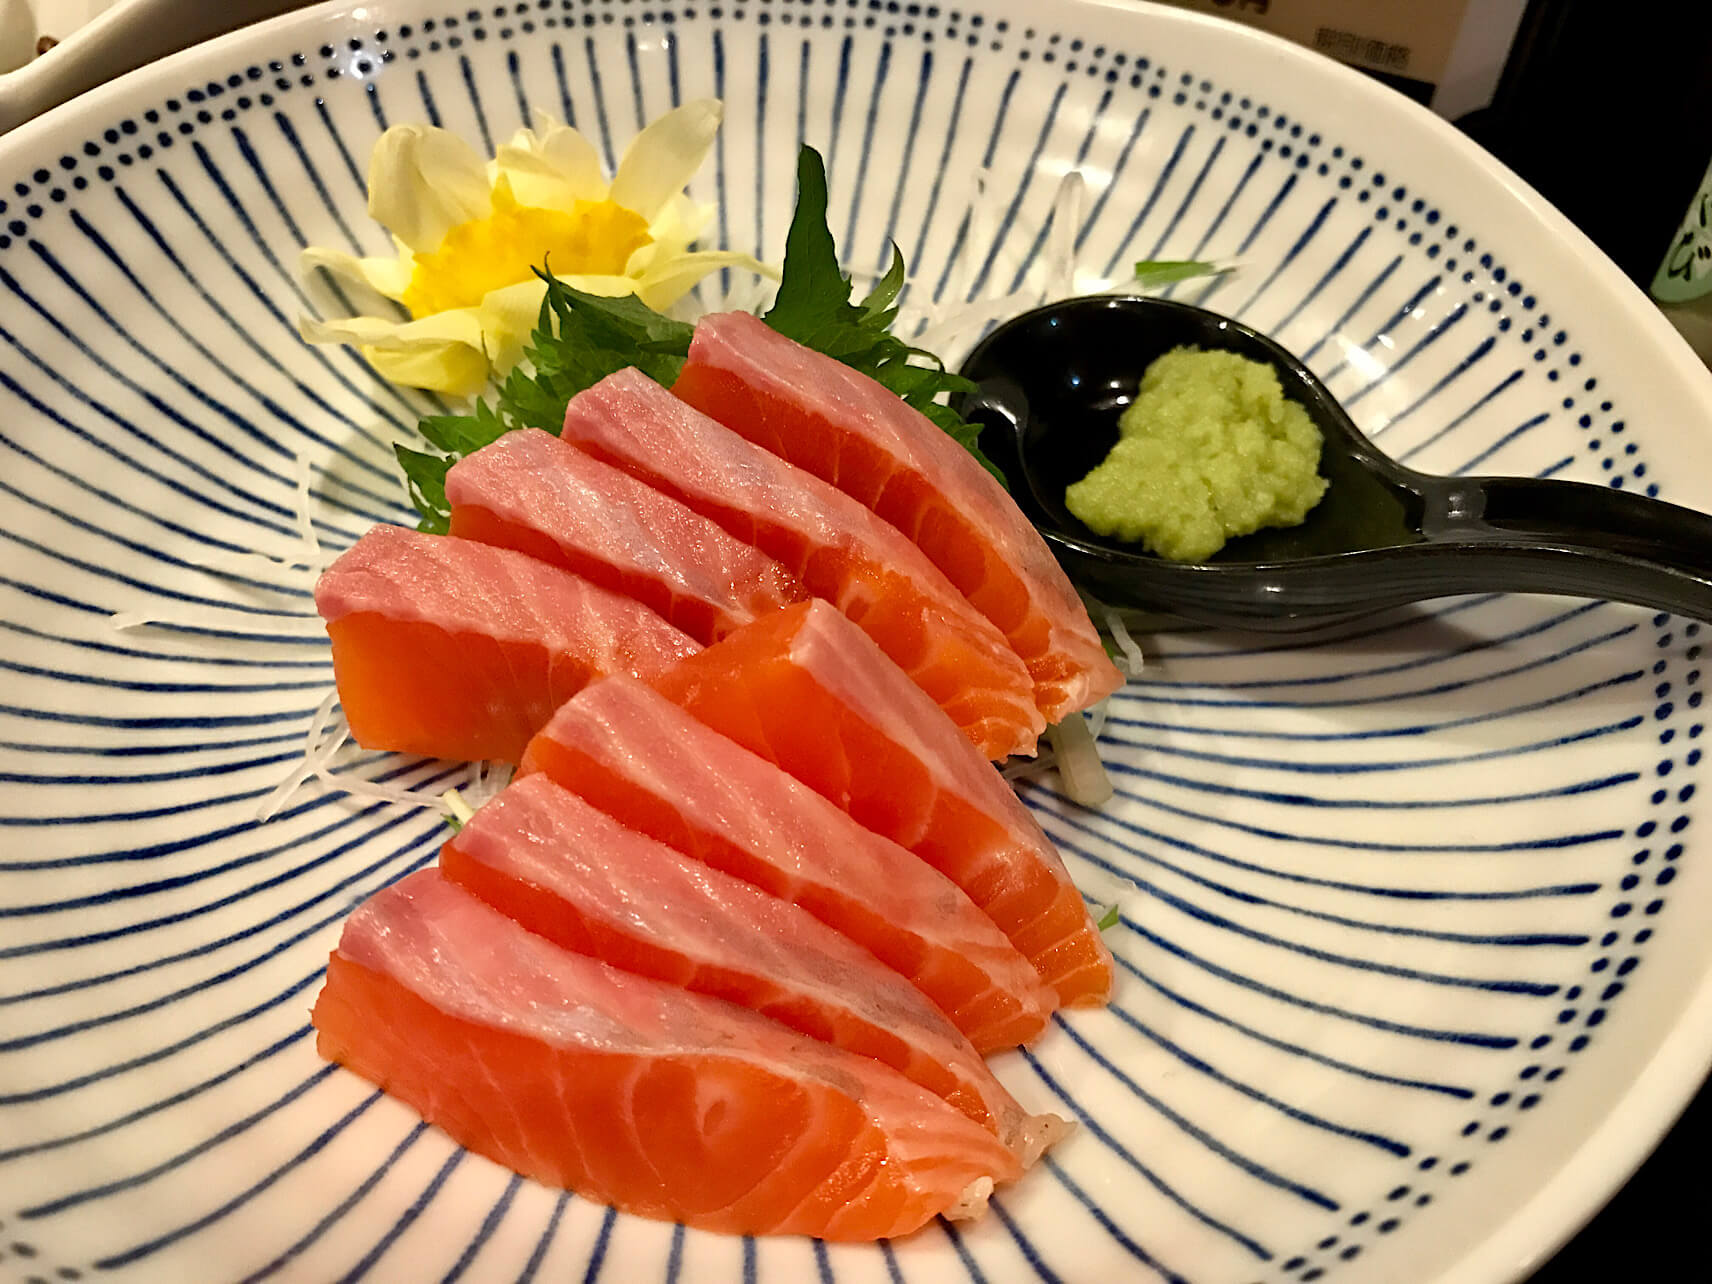 Shinshu salmon